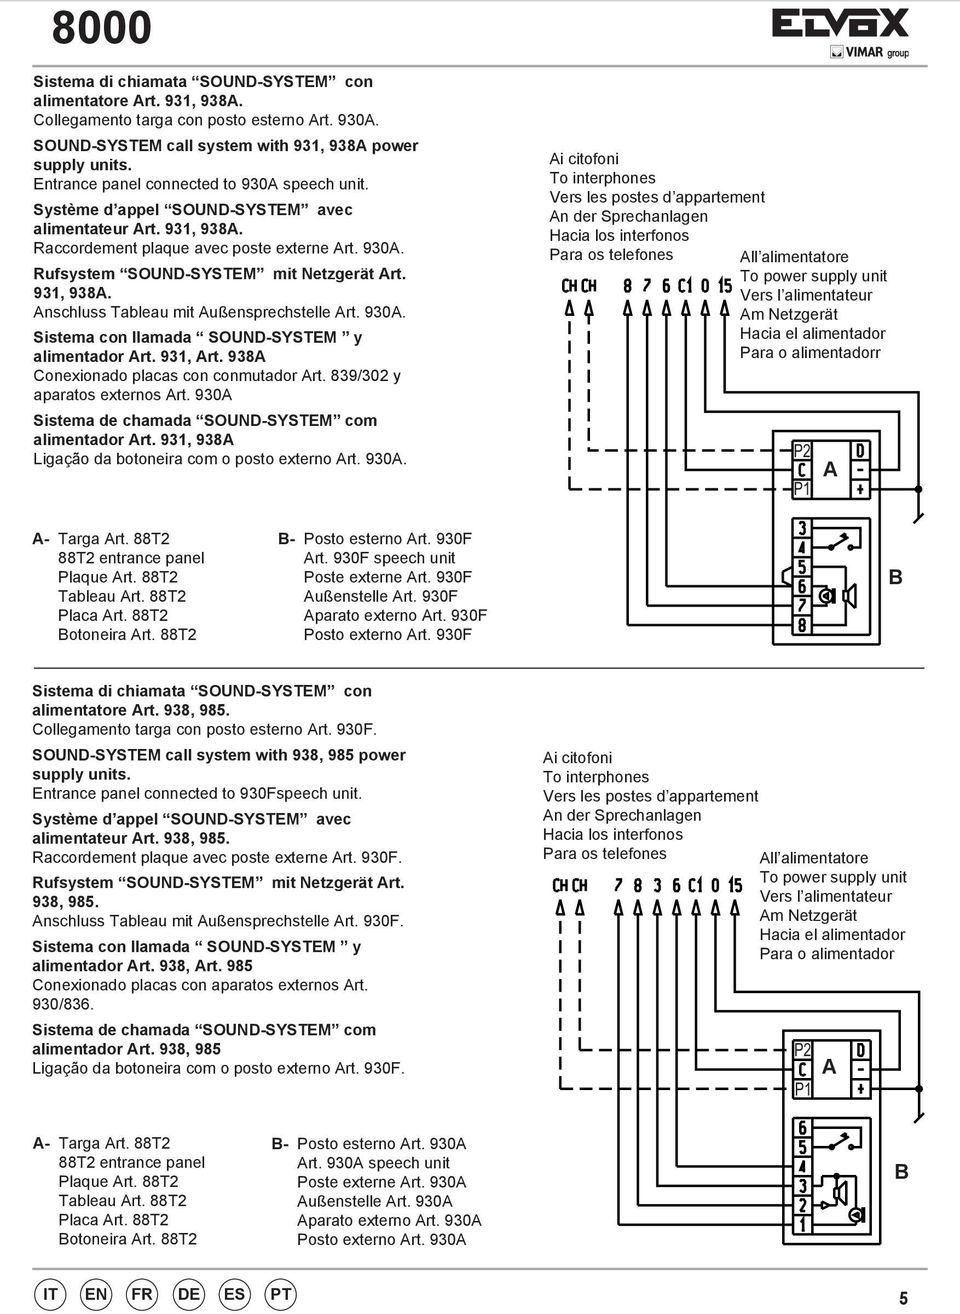 90. Sistema con llamada SOUND-SYSTEM y alimentador rt. 9, rt. 98 Conexionado placas con conmutador rt. 89/02 y aparatos externos rt. 90 Sistema de chamada SOUND-SYSTEM com alimentador rt.